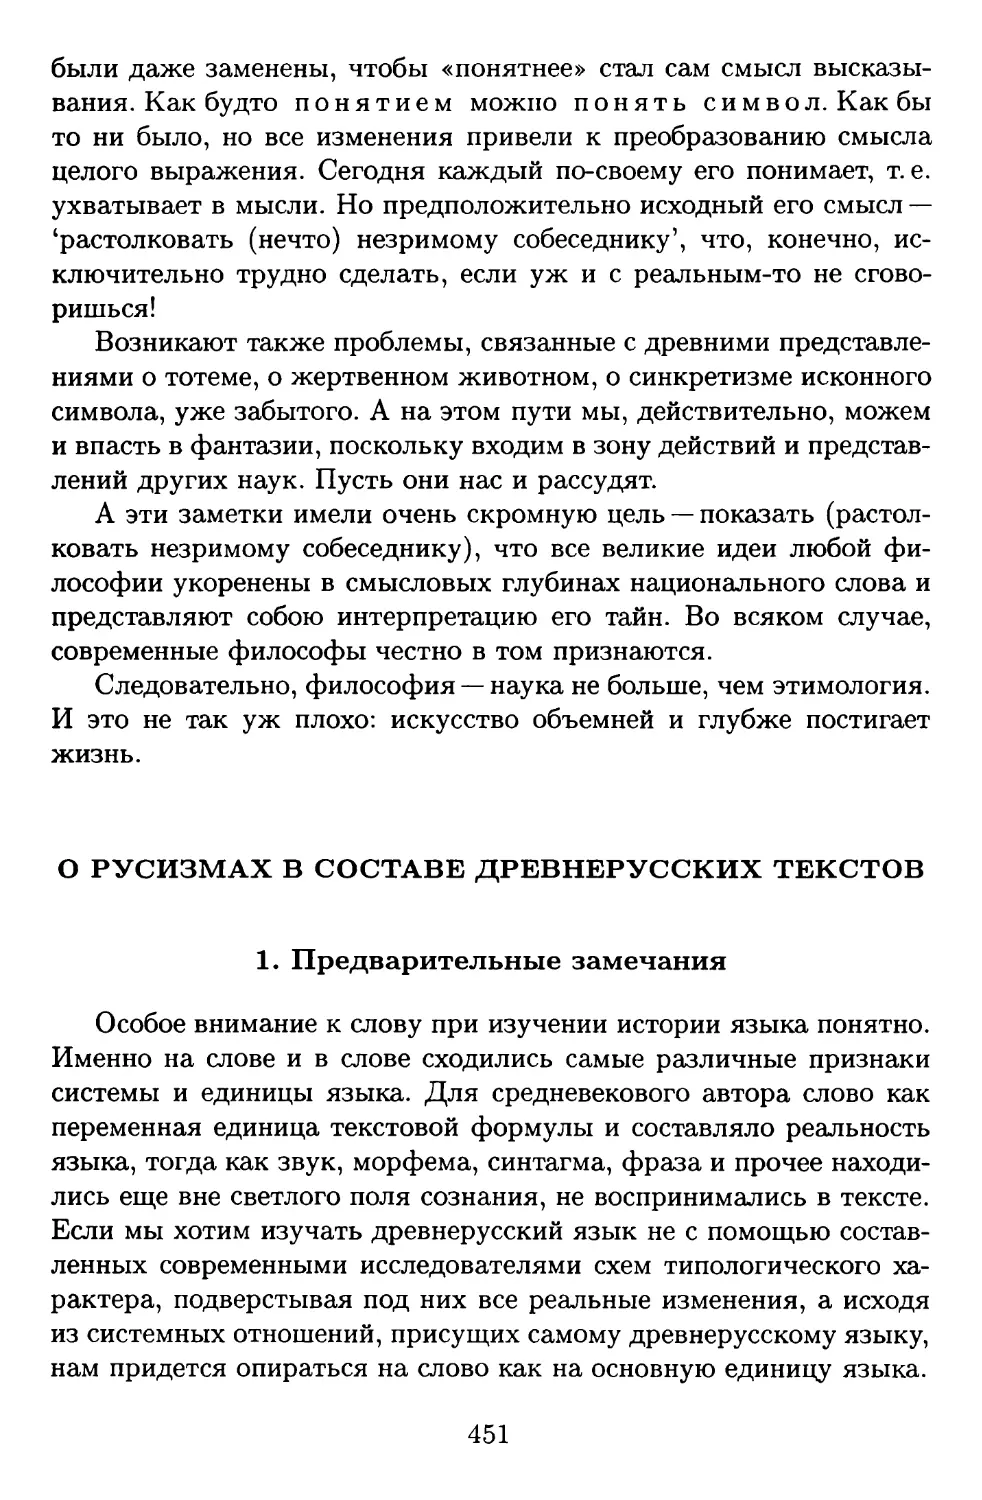 О русизмах в составе древнерусских текстов